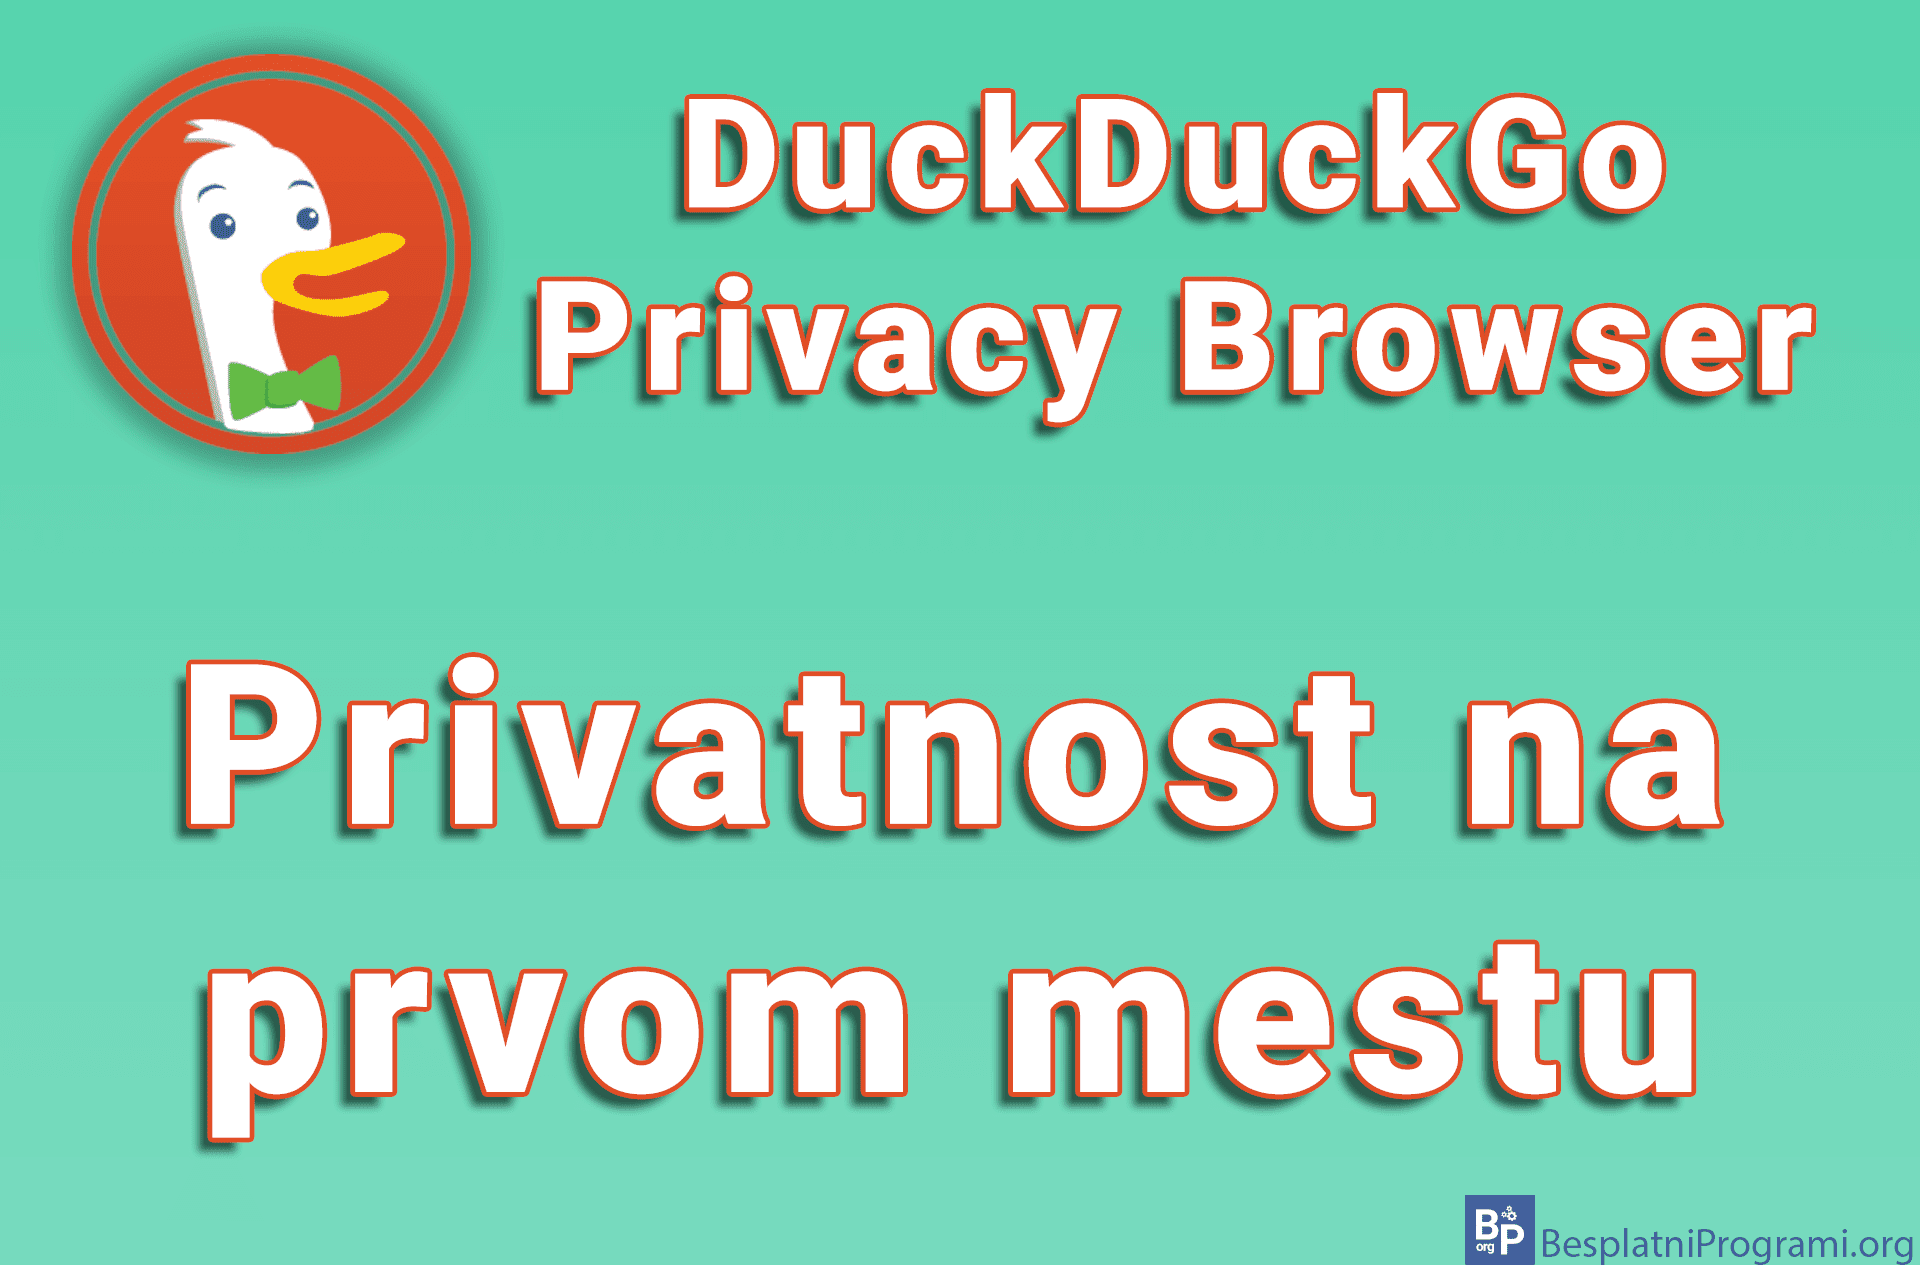 DuckDuckGo Privacy Browser - Privatnost na prvom mestu